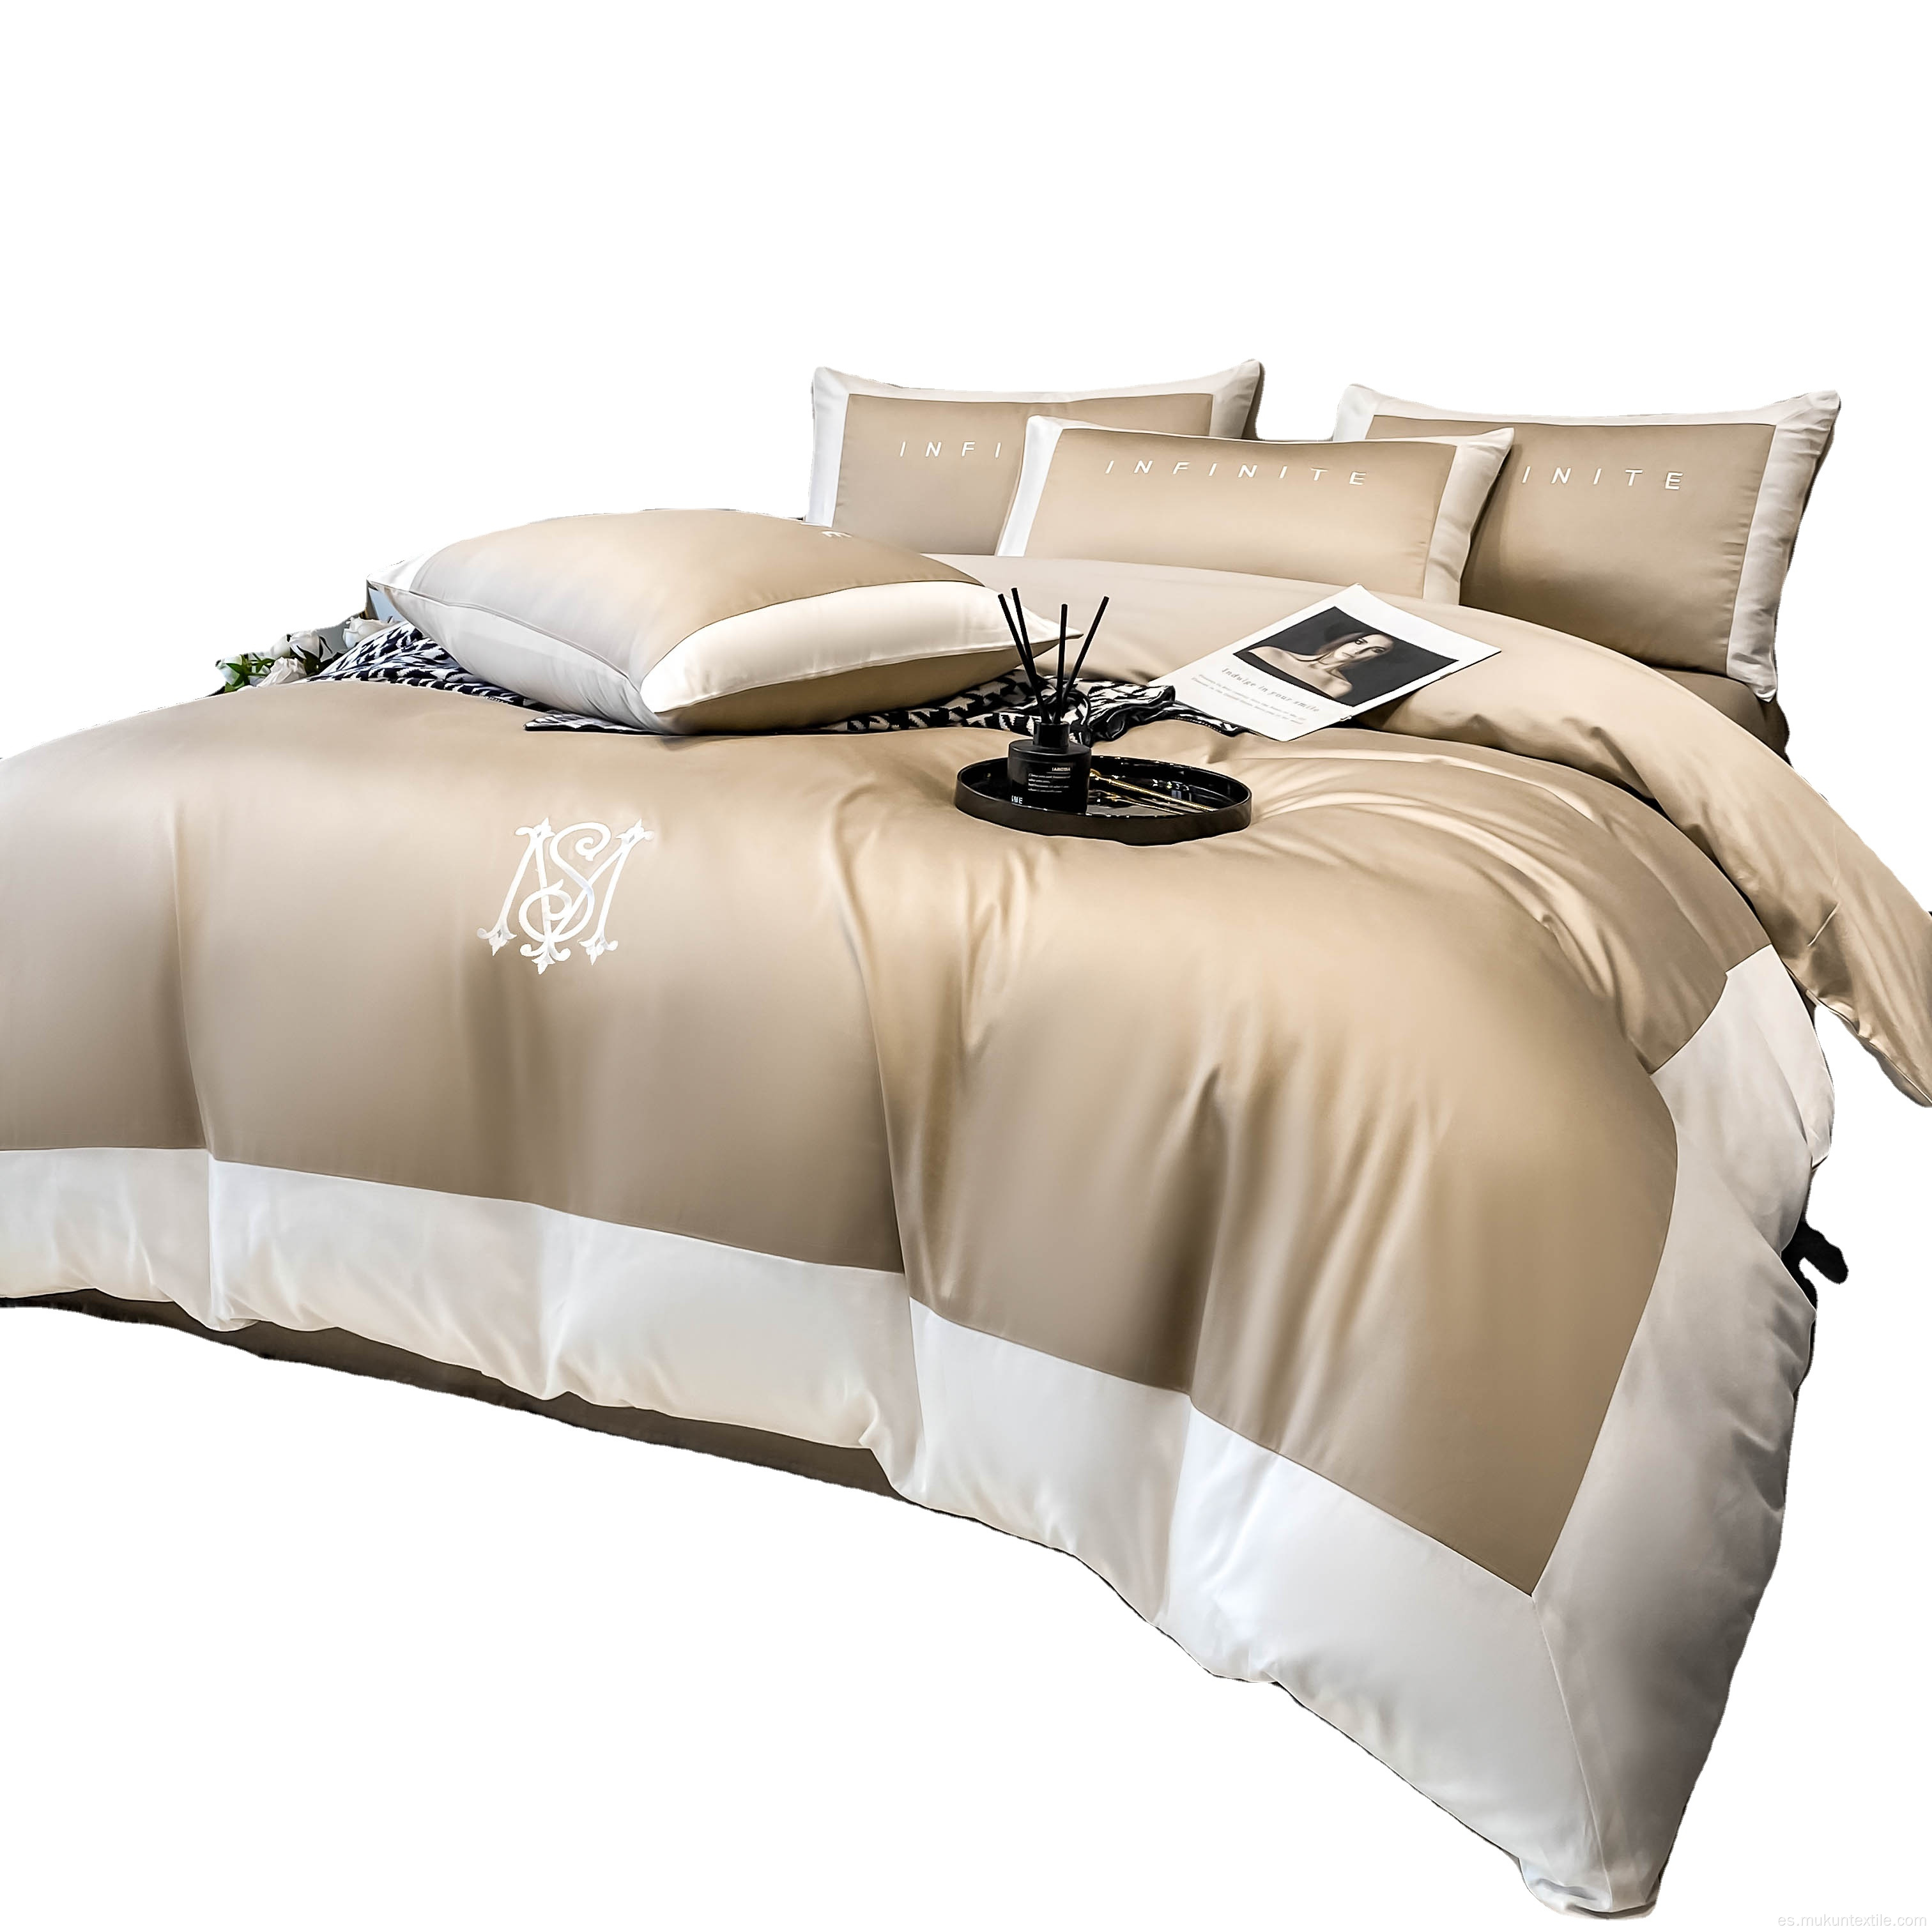 Calidad de bordado edredón king size set de ropa de cama de algodón